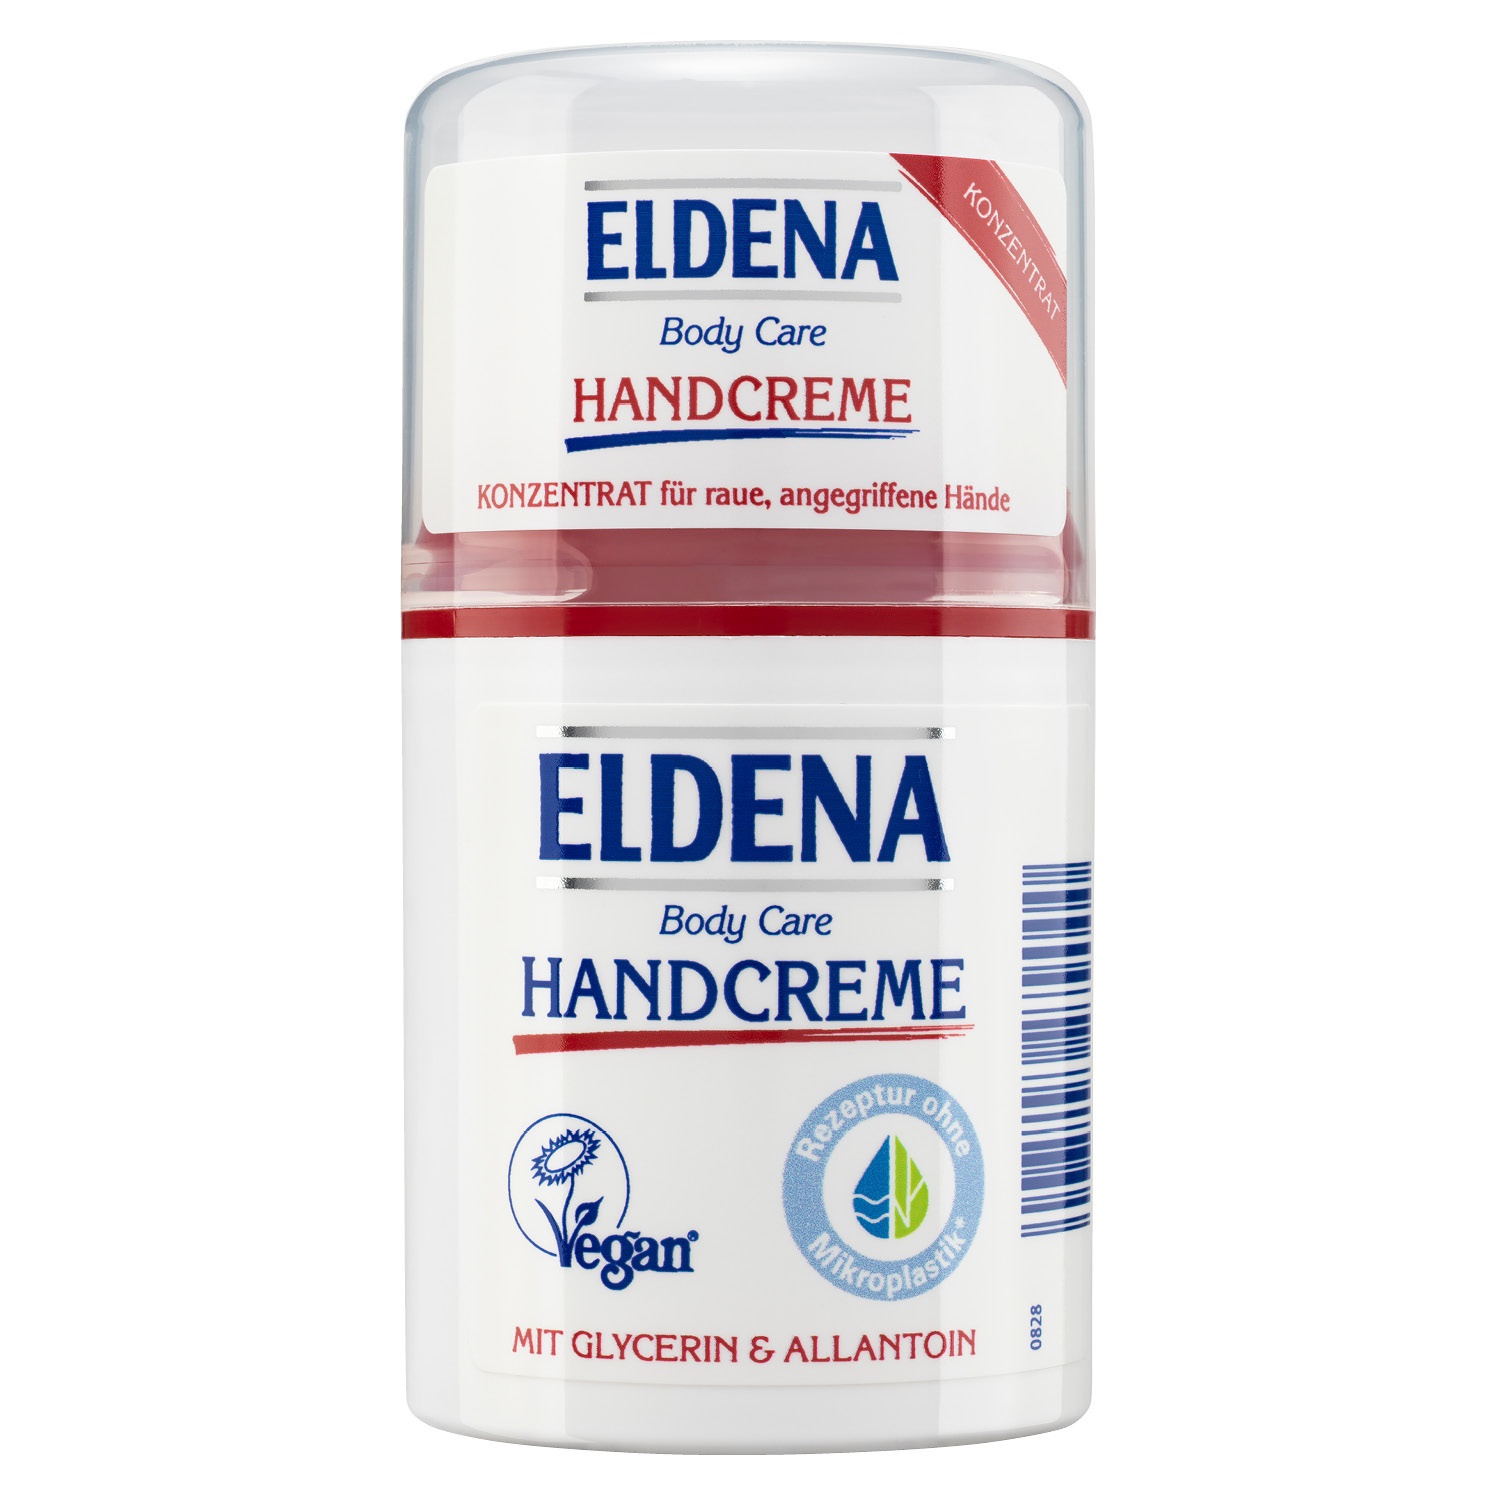 ELDENA Handcreme/Konzentrat 50 ml